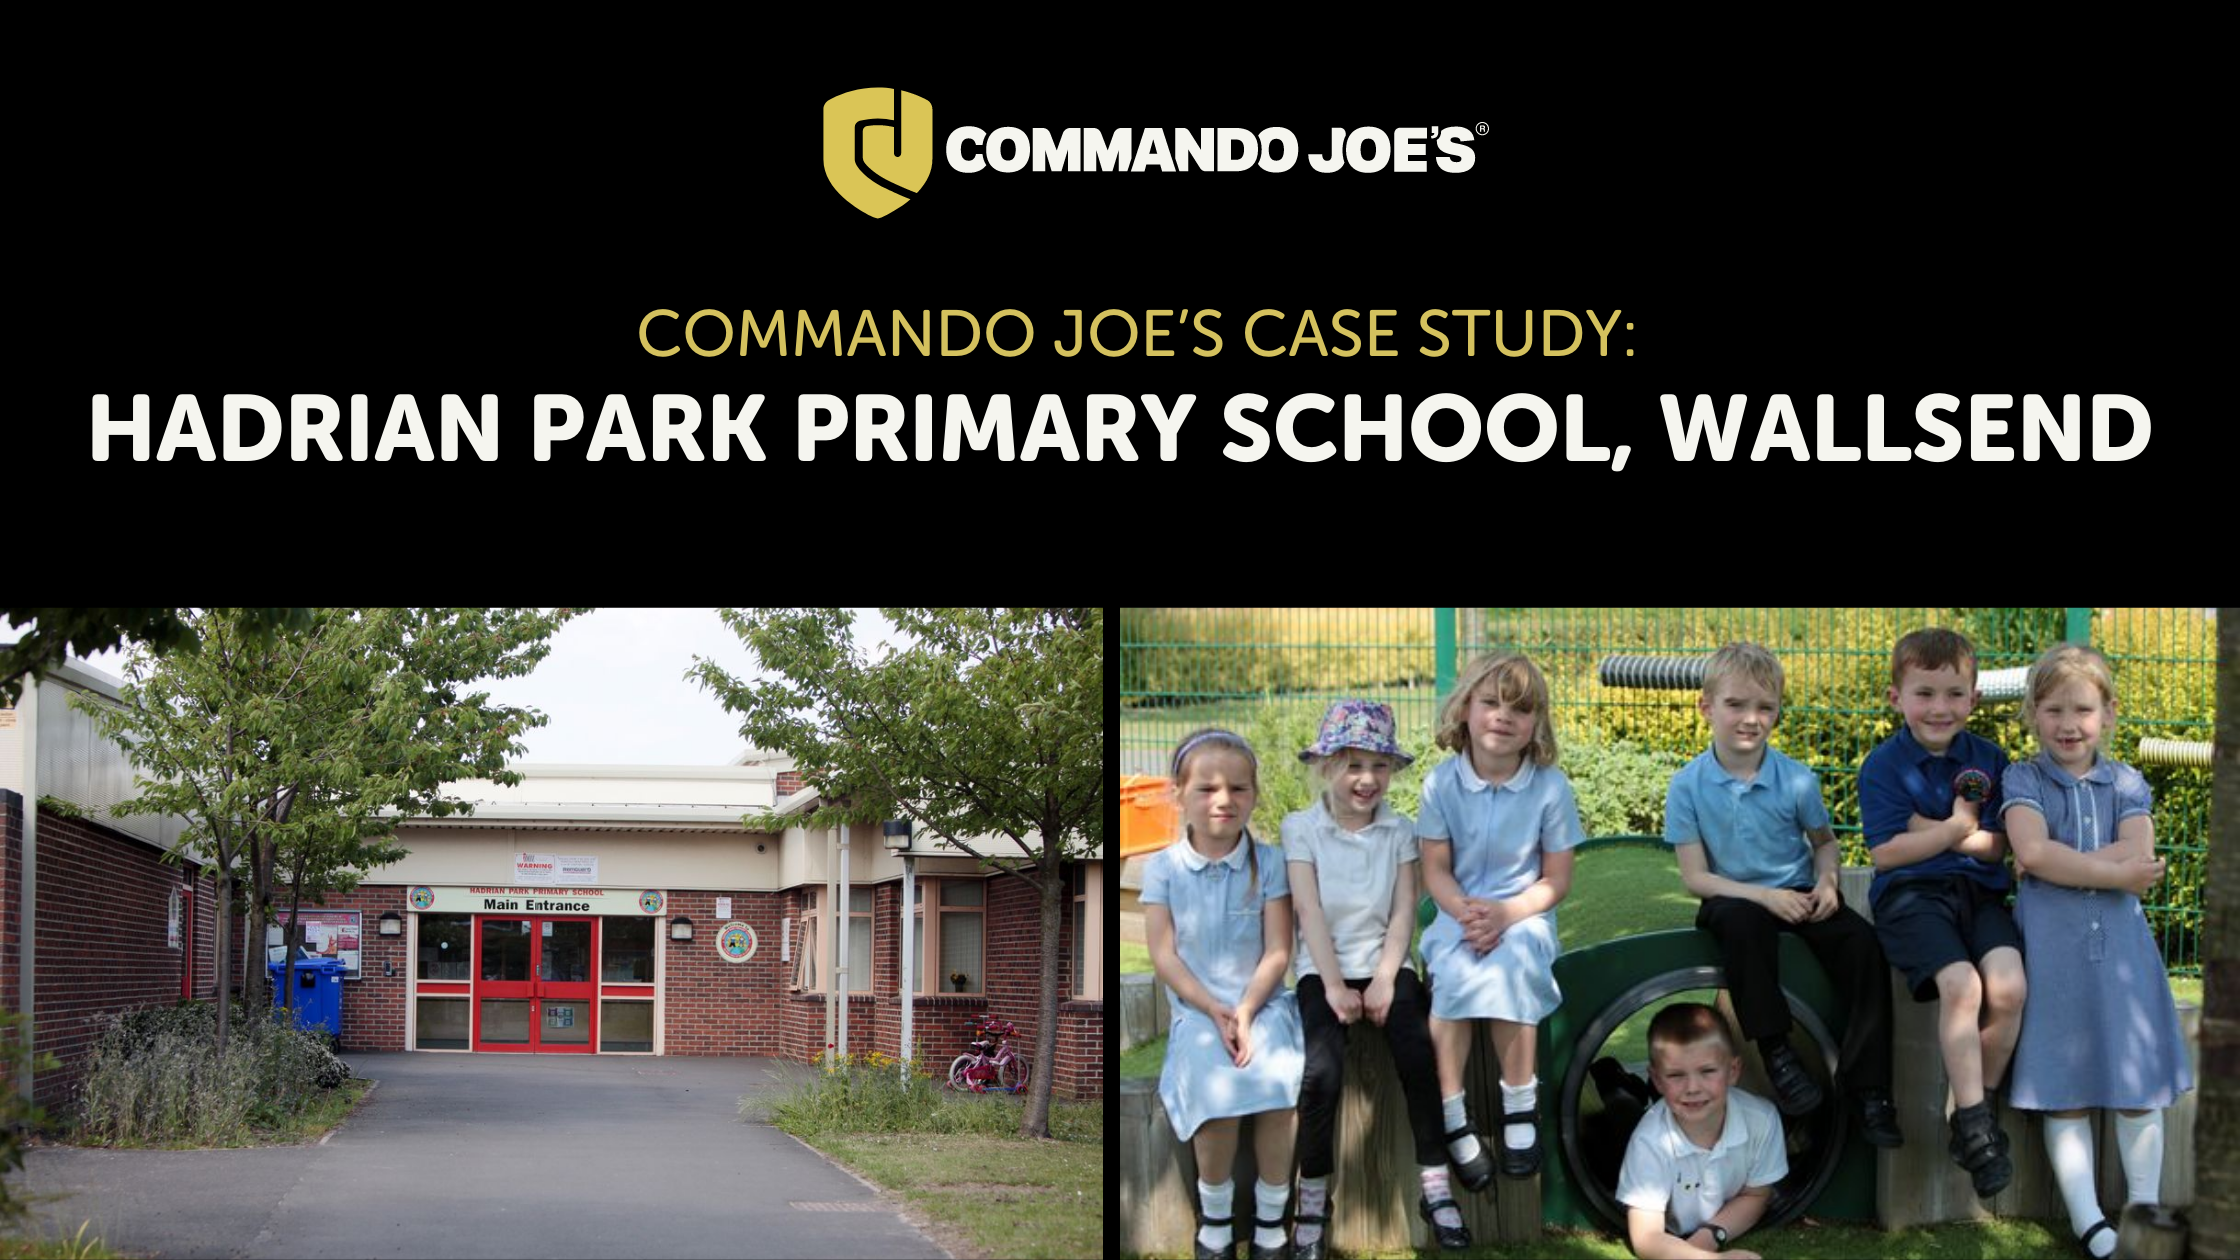 Commando Joe’s Case Study: Hadrian Park Primary School, Wallsend